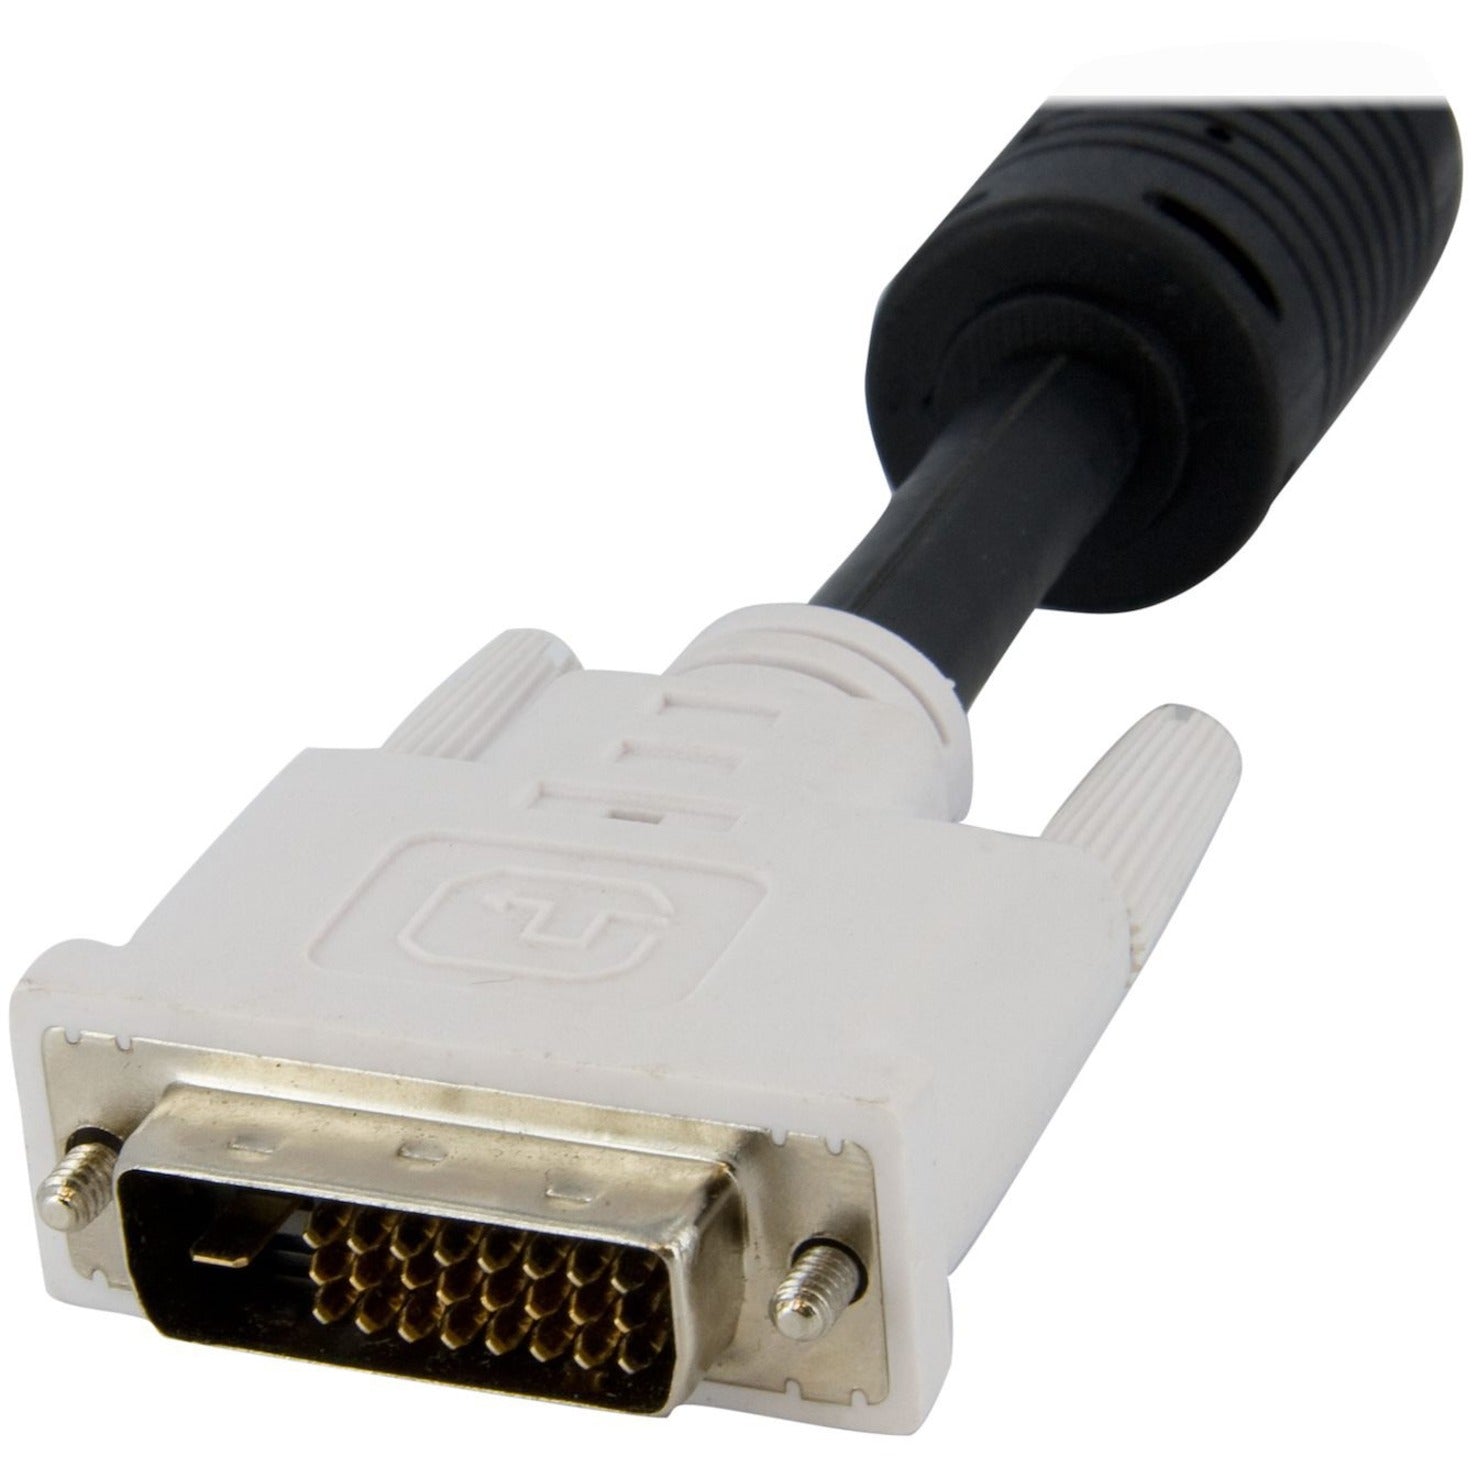 StarTech.comのDVID4N1USB6 6ft 4-in-1 USBデュアルリンクDVI-D KVMスイッチケーブル withオーディオ＆マイクロホン、銅導体、7.9 Gbit/sデータ転送速度 Discontinued